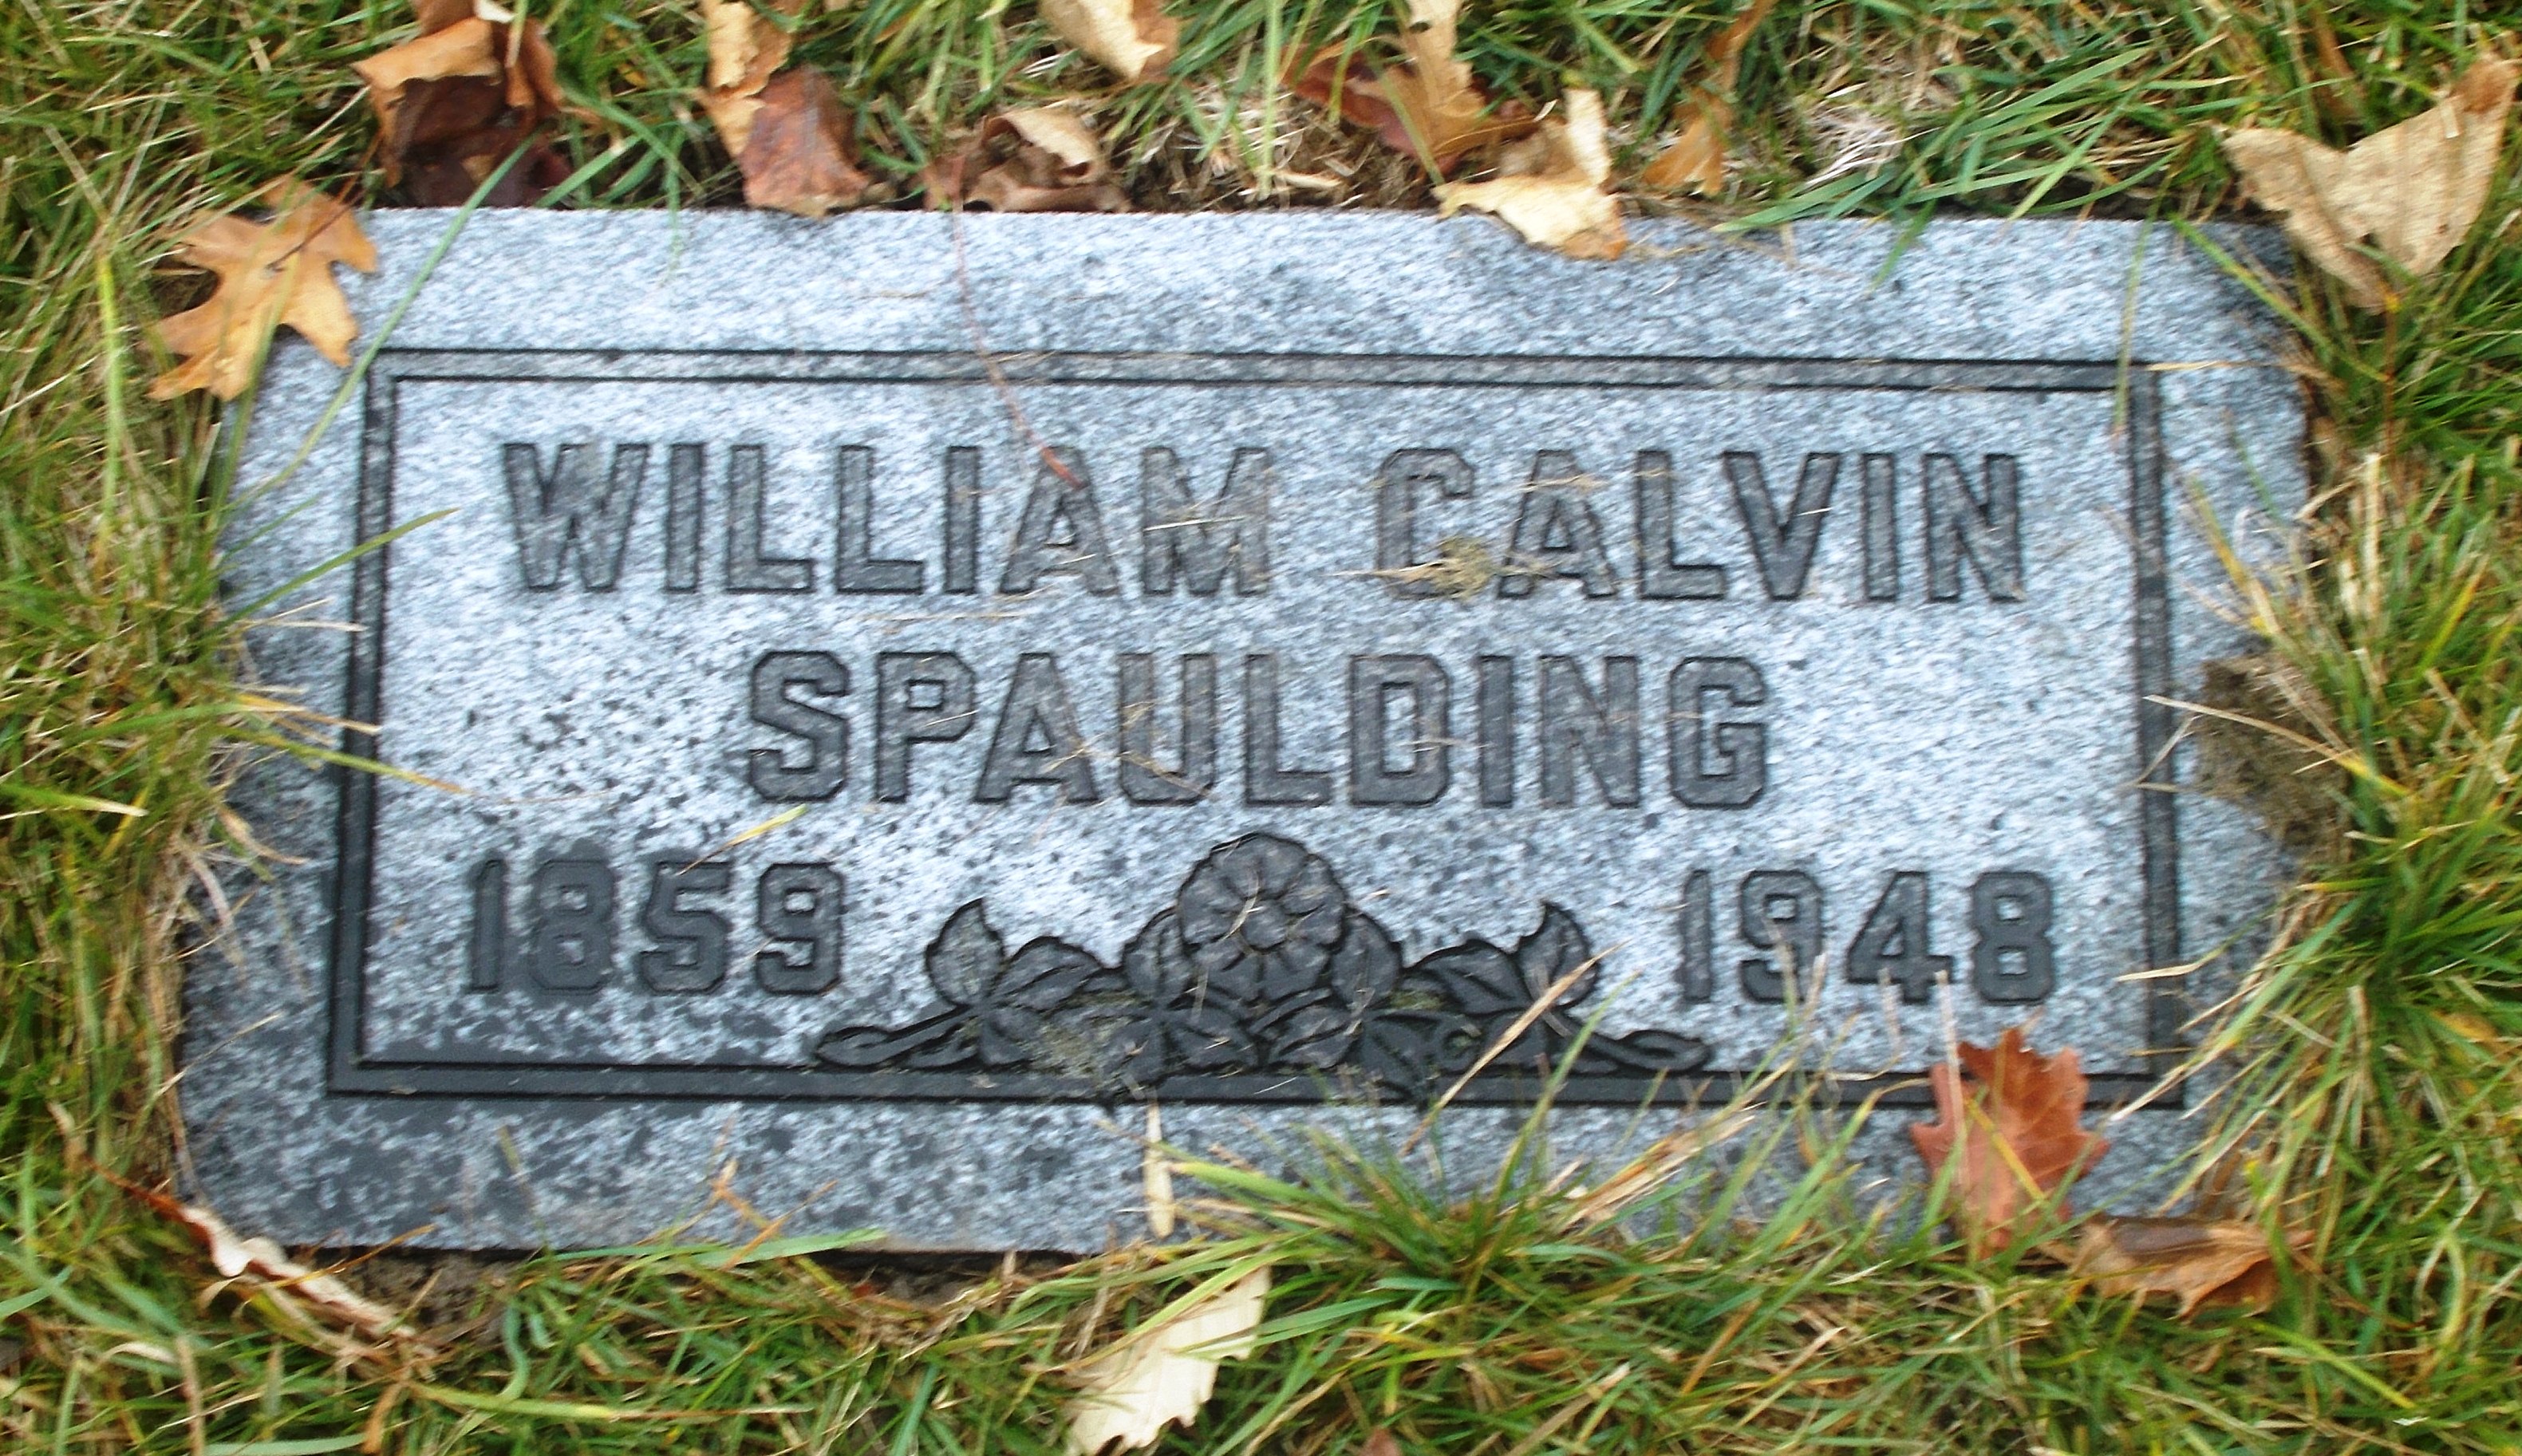 William Calvin Spaulding